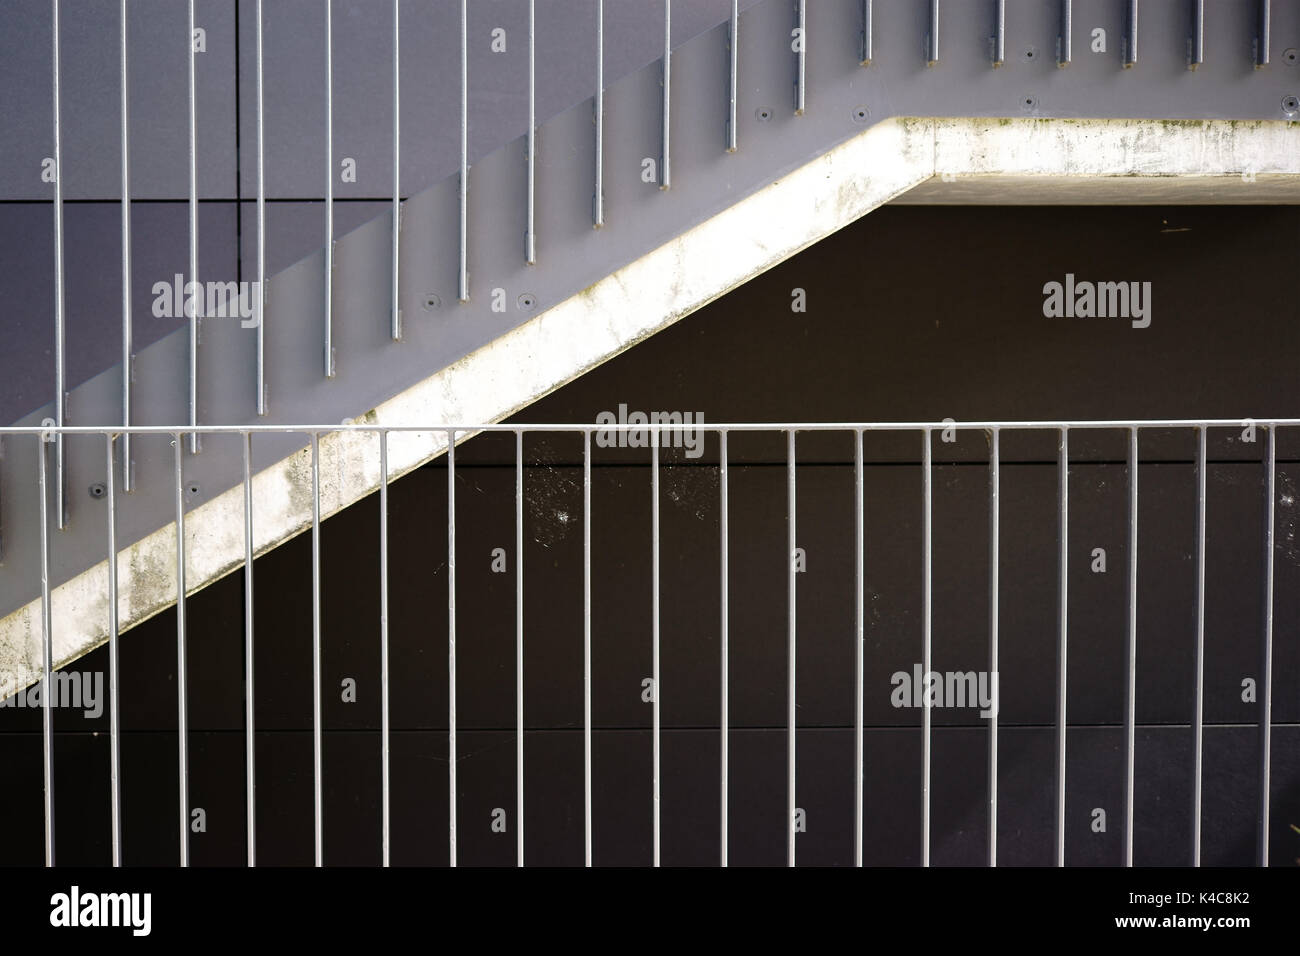 Moderne Treppe Stockfoto